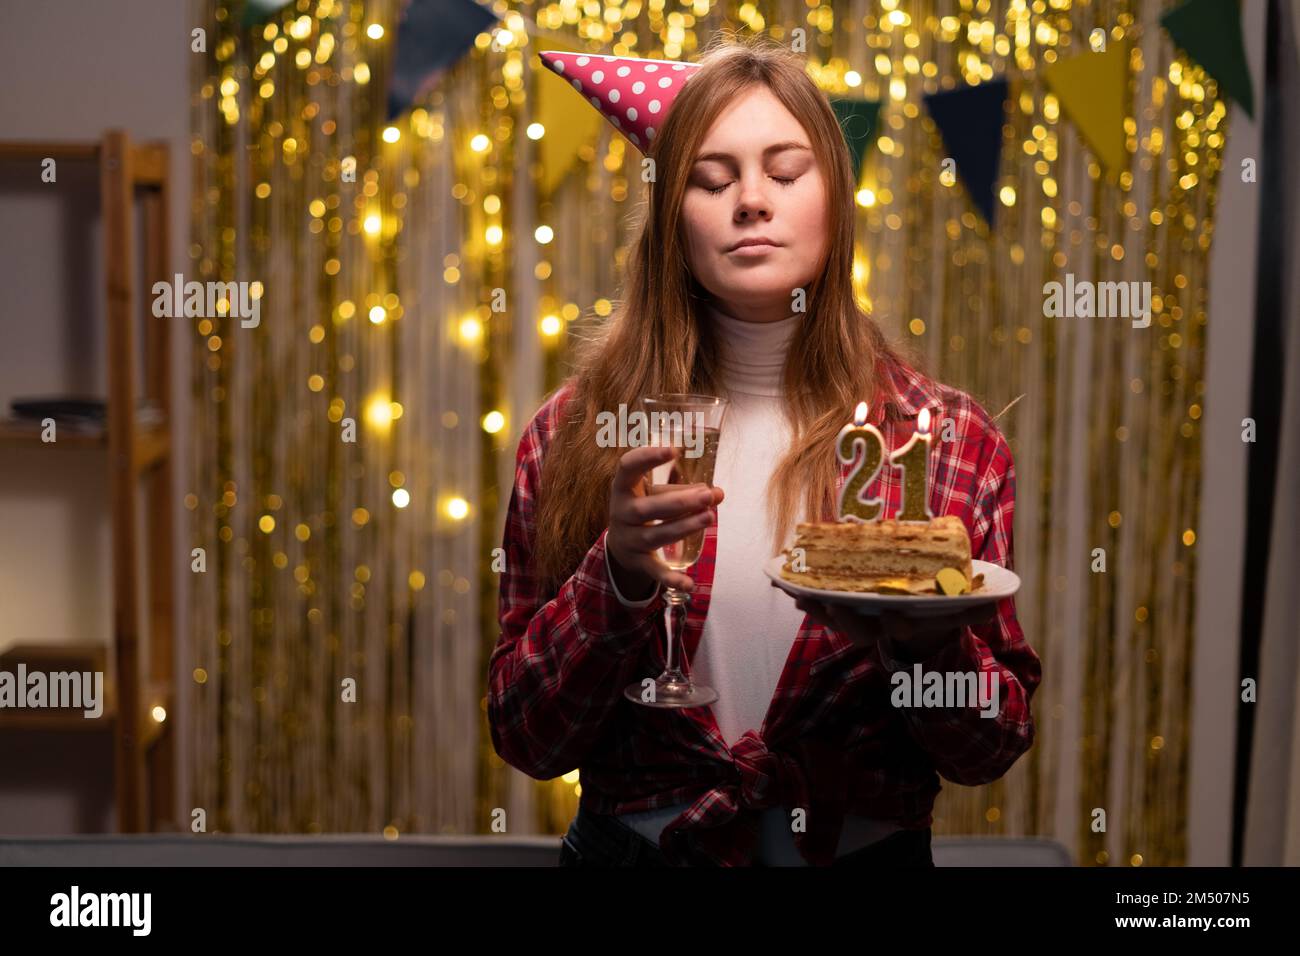 Ein weißes Mädchen wünscht sich etwas, indem sie die Augen schließt und einen Geburtstagskuchen mit Kerzen Nummer 21 in der Hand hält. Speicherplatz kopieren Stockfoto